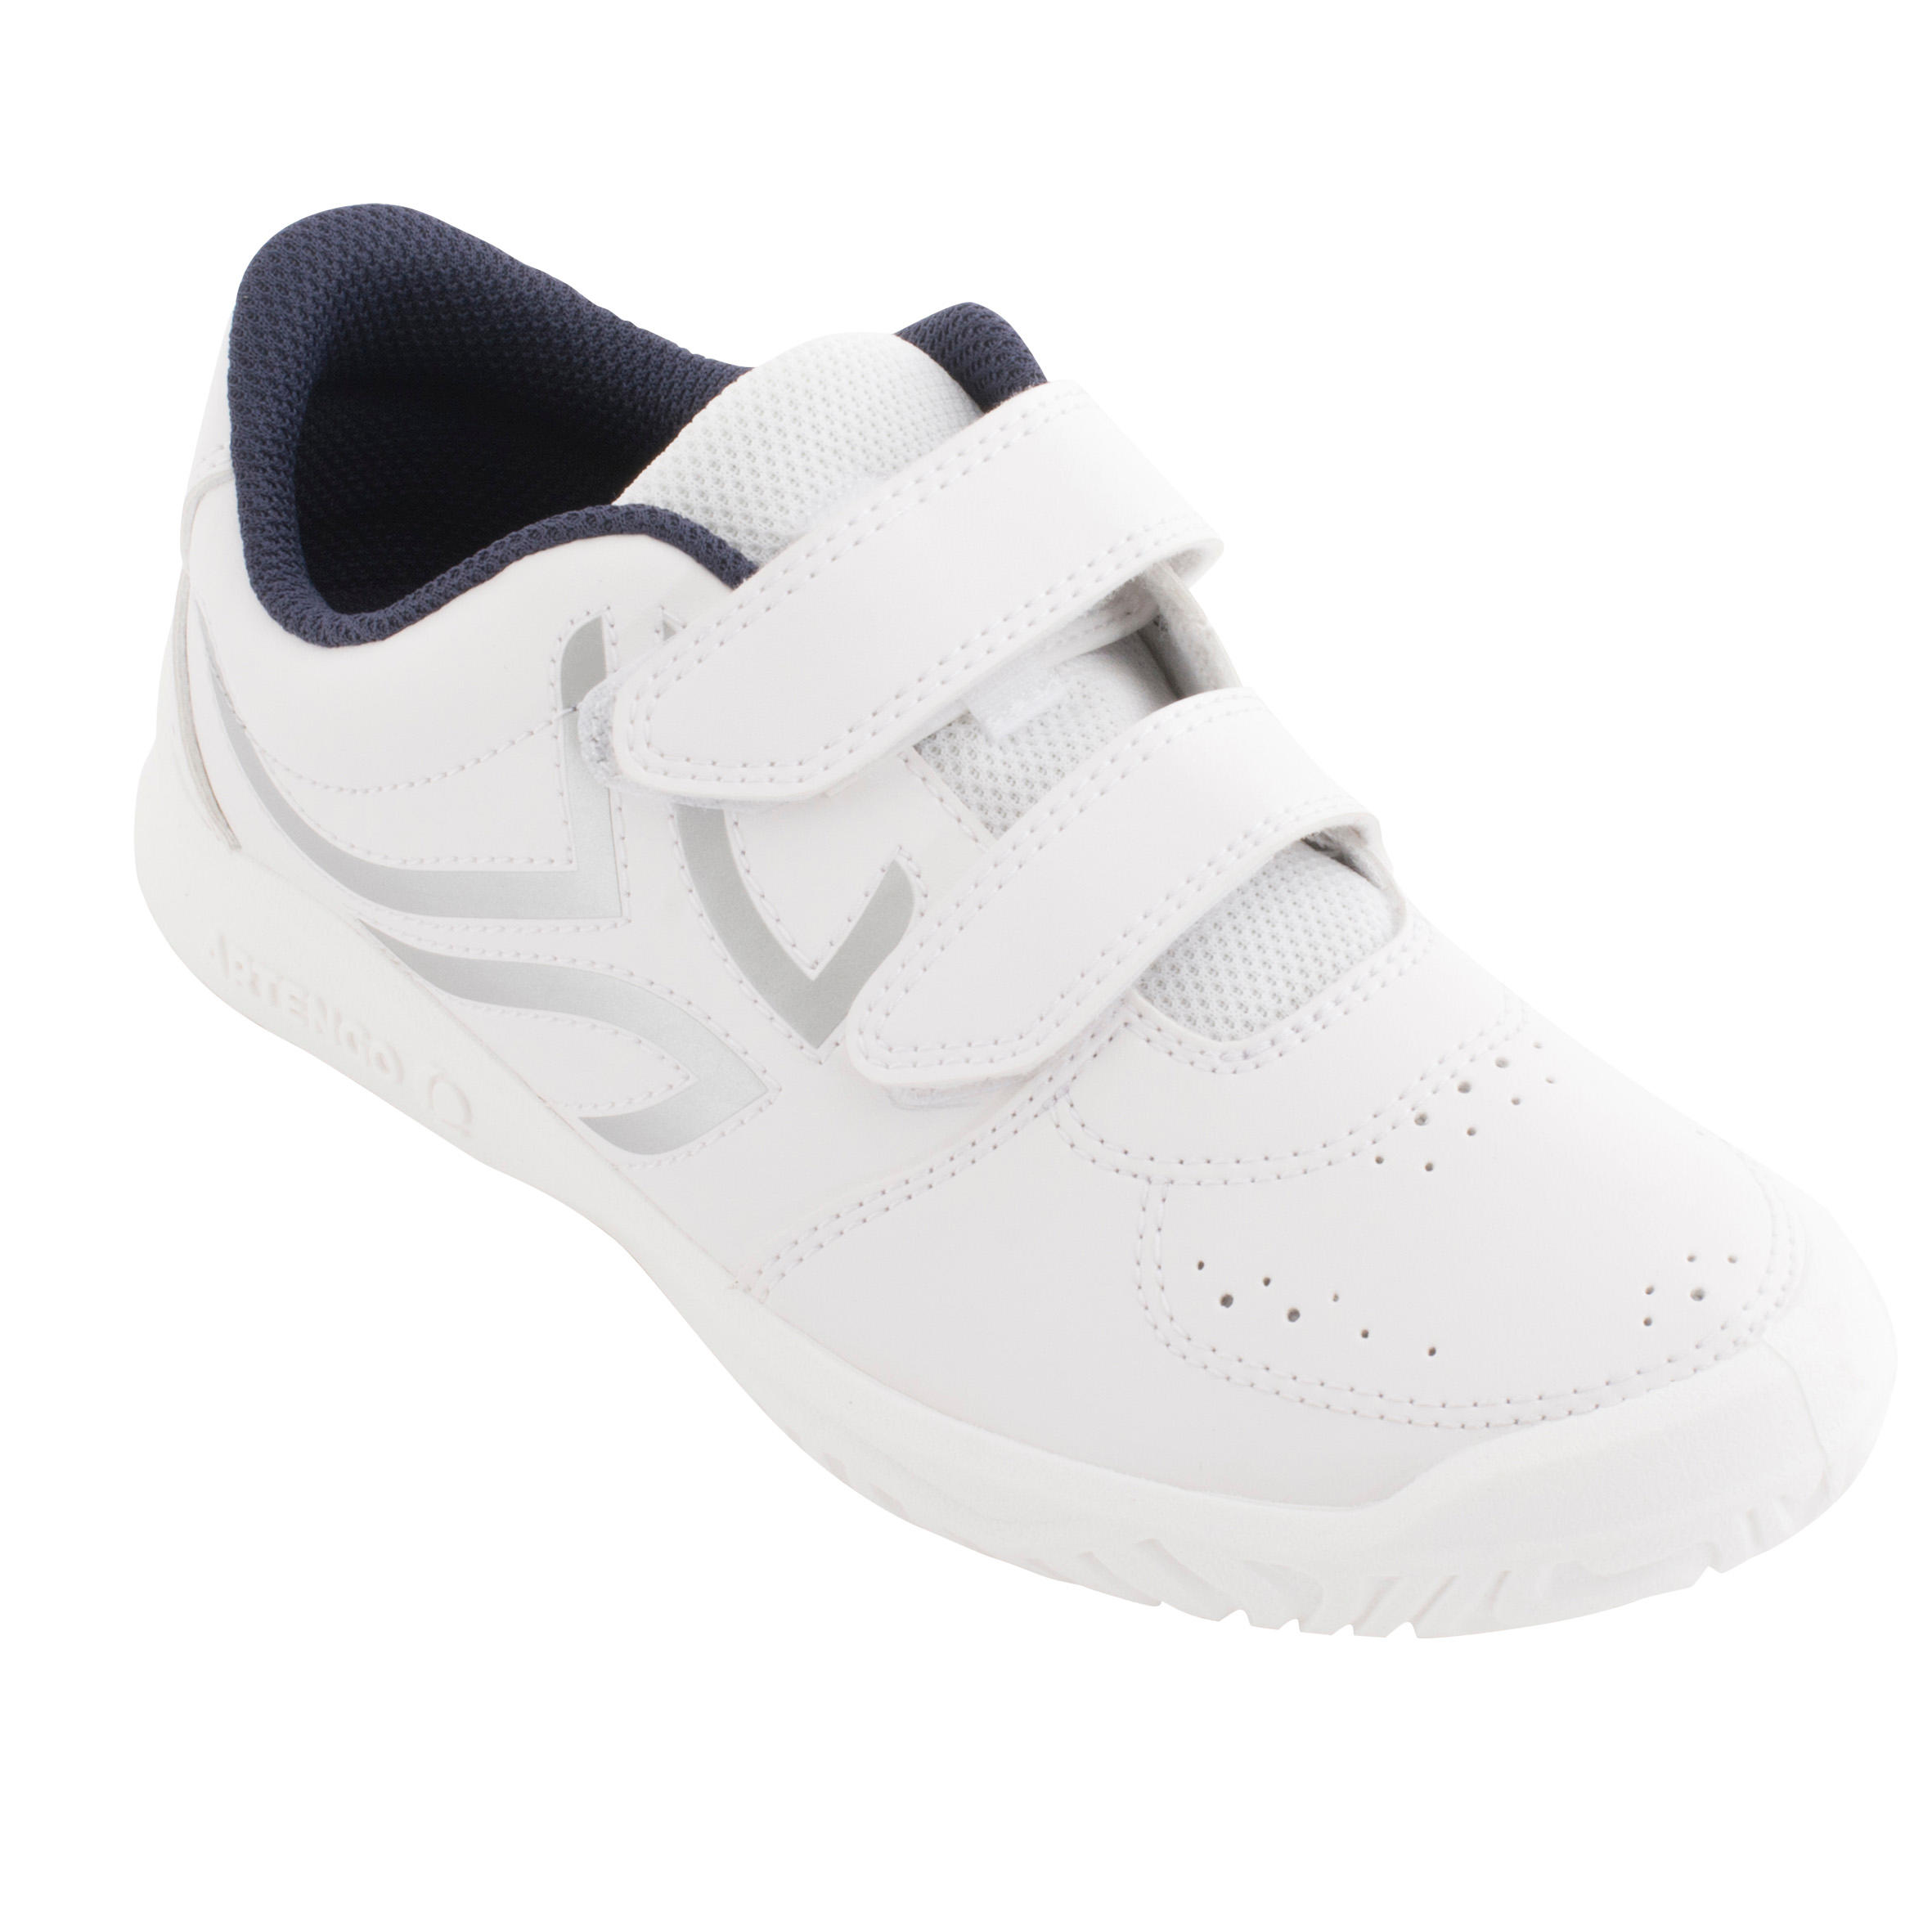 Chaussures à fermeture autoagrippante enfant - TS 100 blanc - DECATHLON